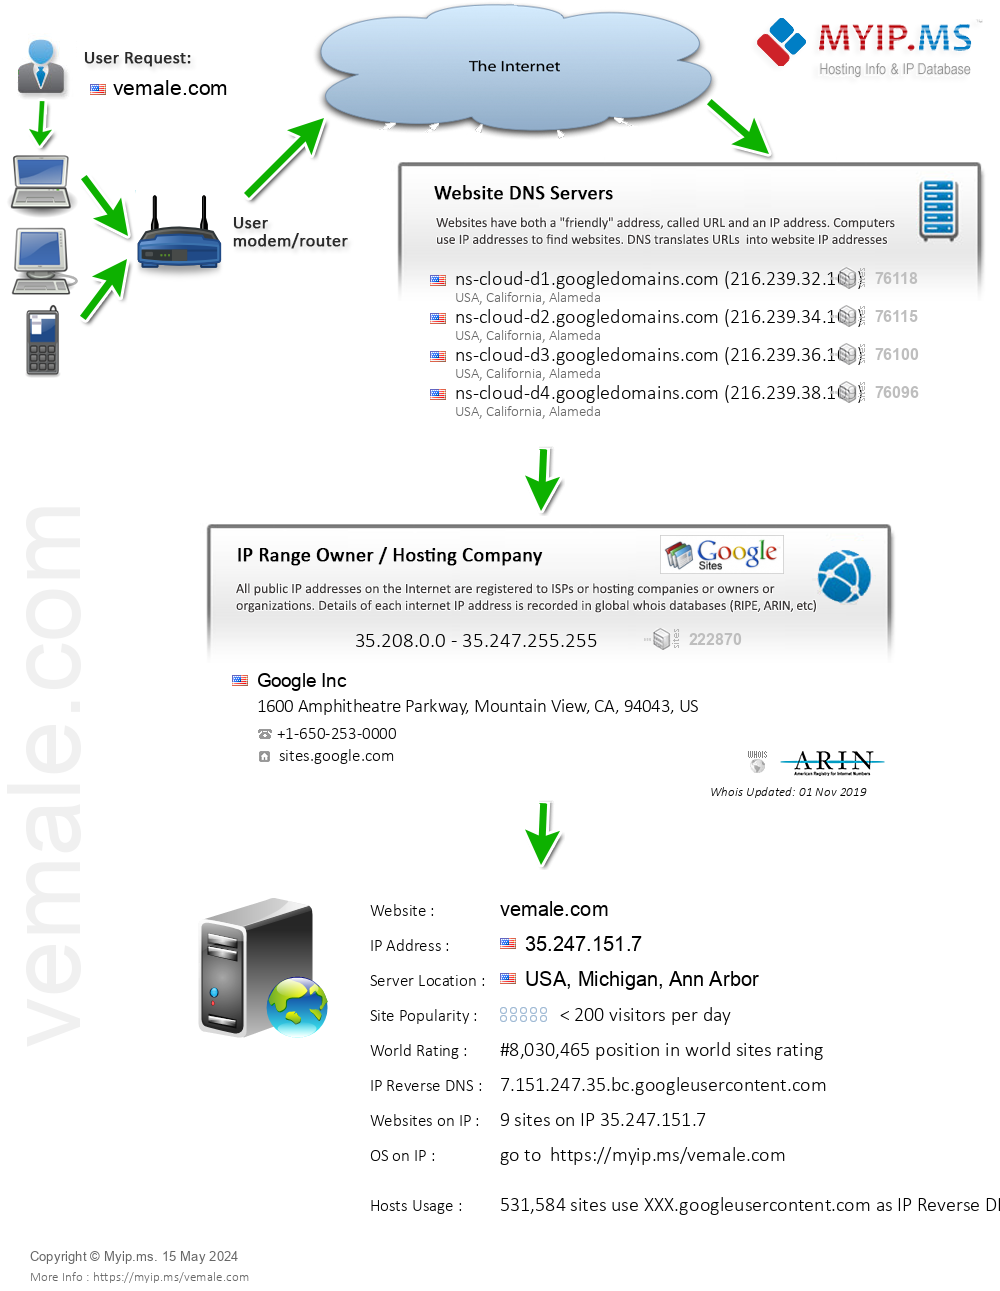 Vemale.com - Website Hosting Visual IP Diagram